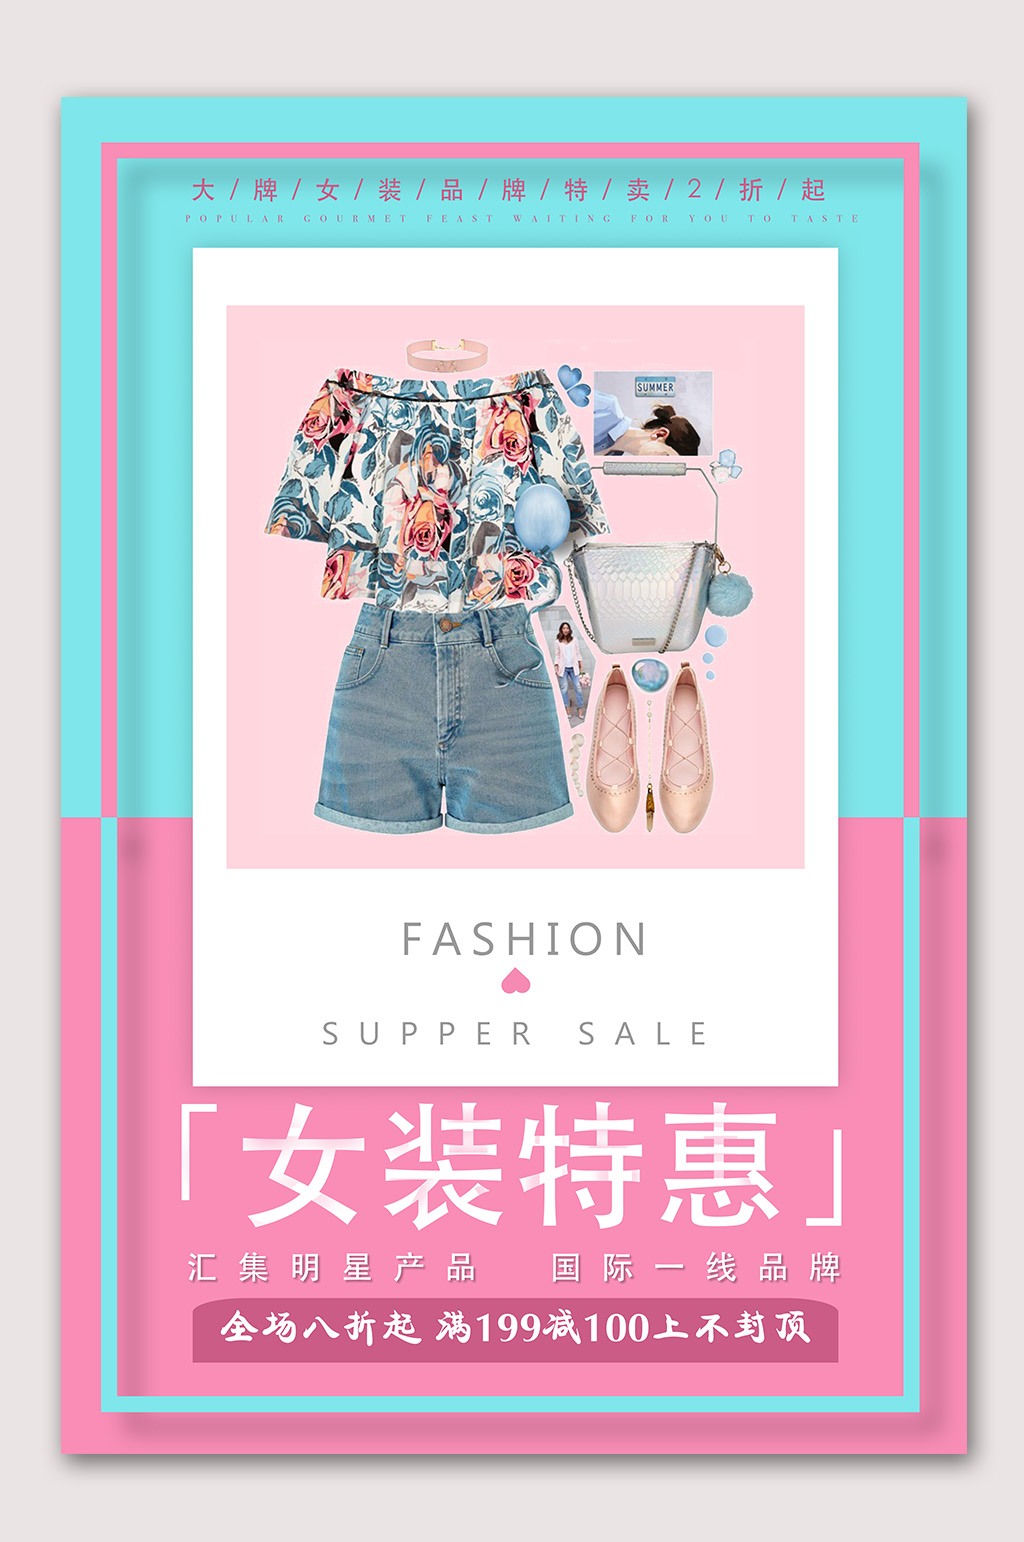 众图网独家提供夏季女装特惠海报素材免费下载,本作品是由山寨宝宝